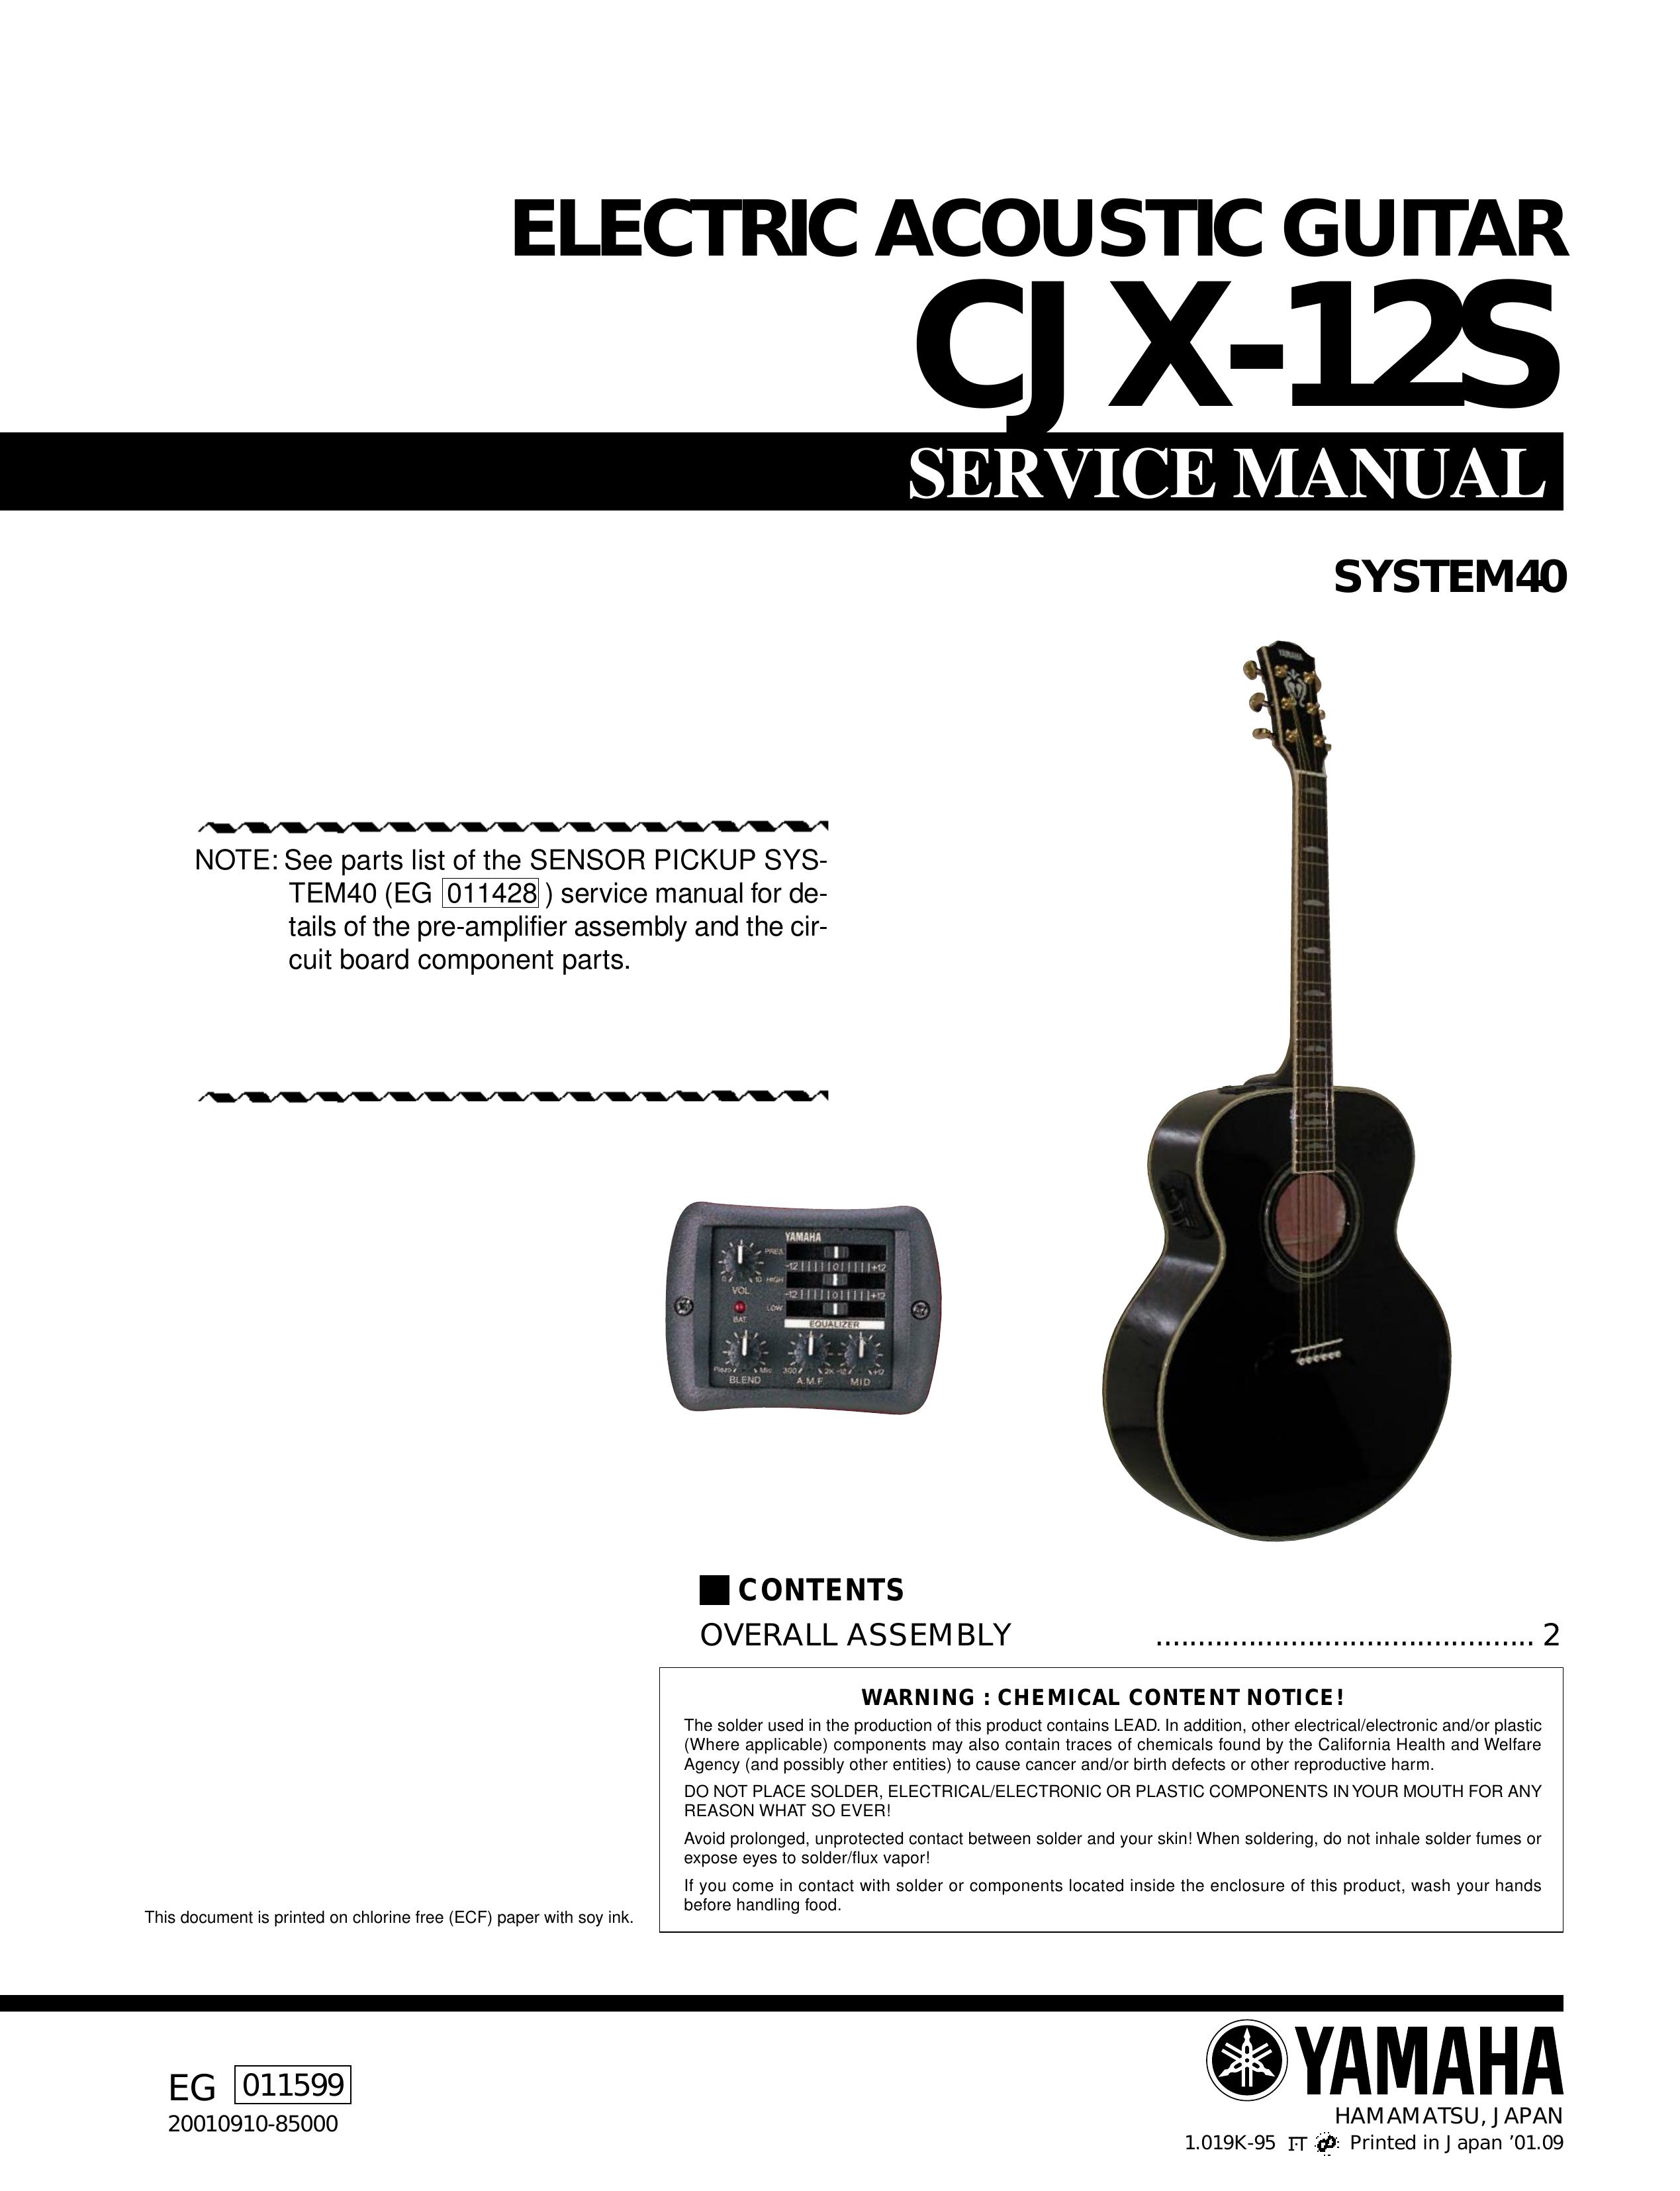 Yamaha CJX-12S Guitar User Manual